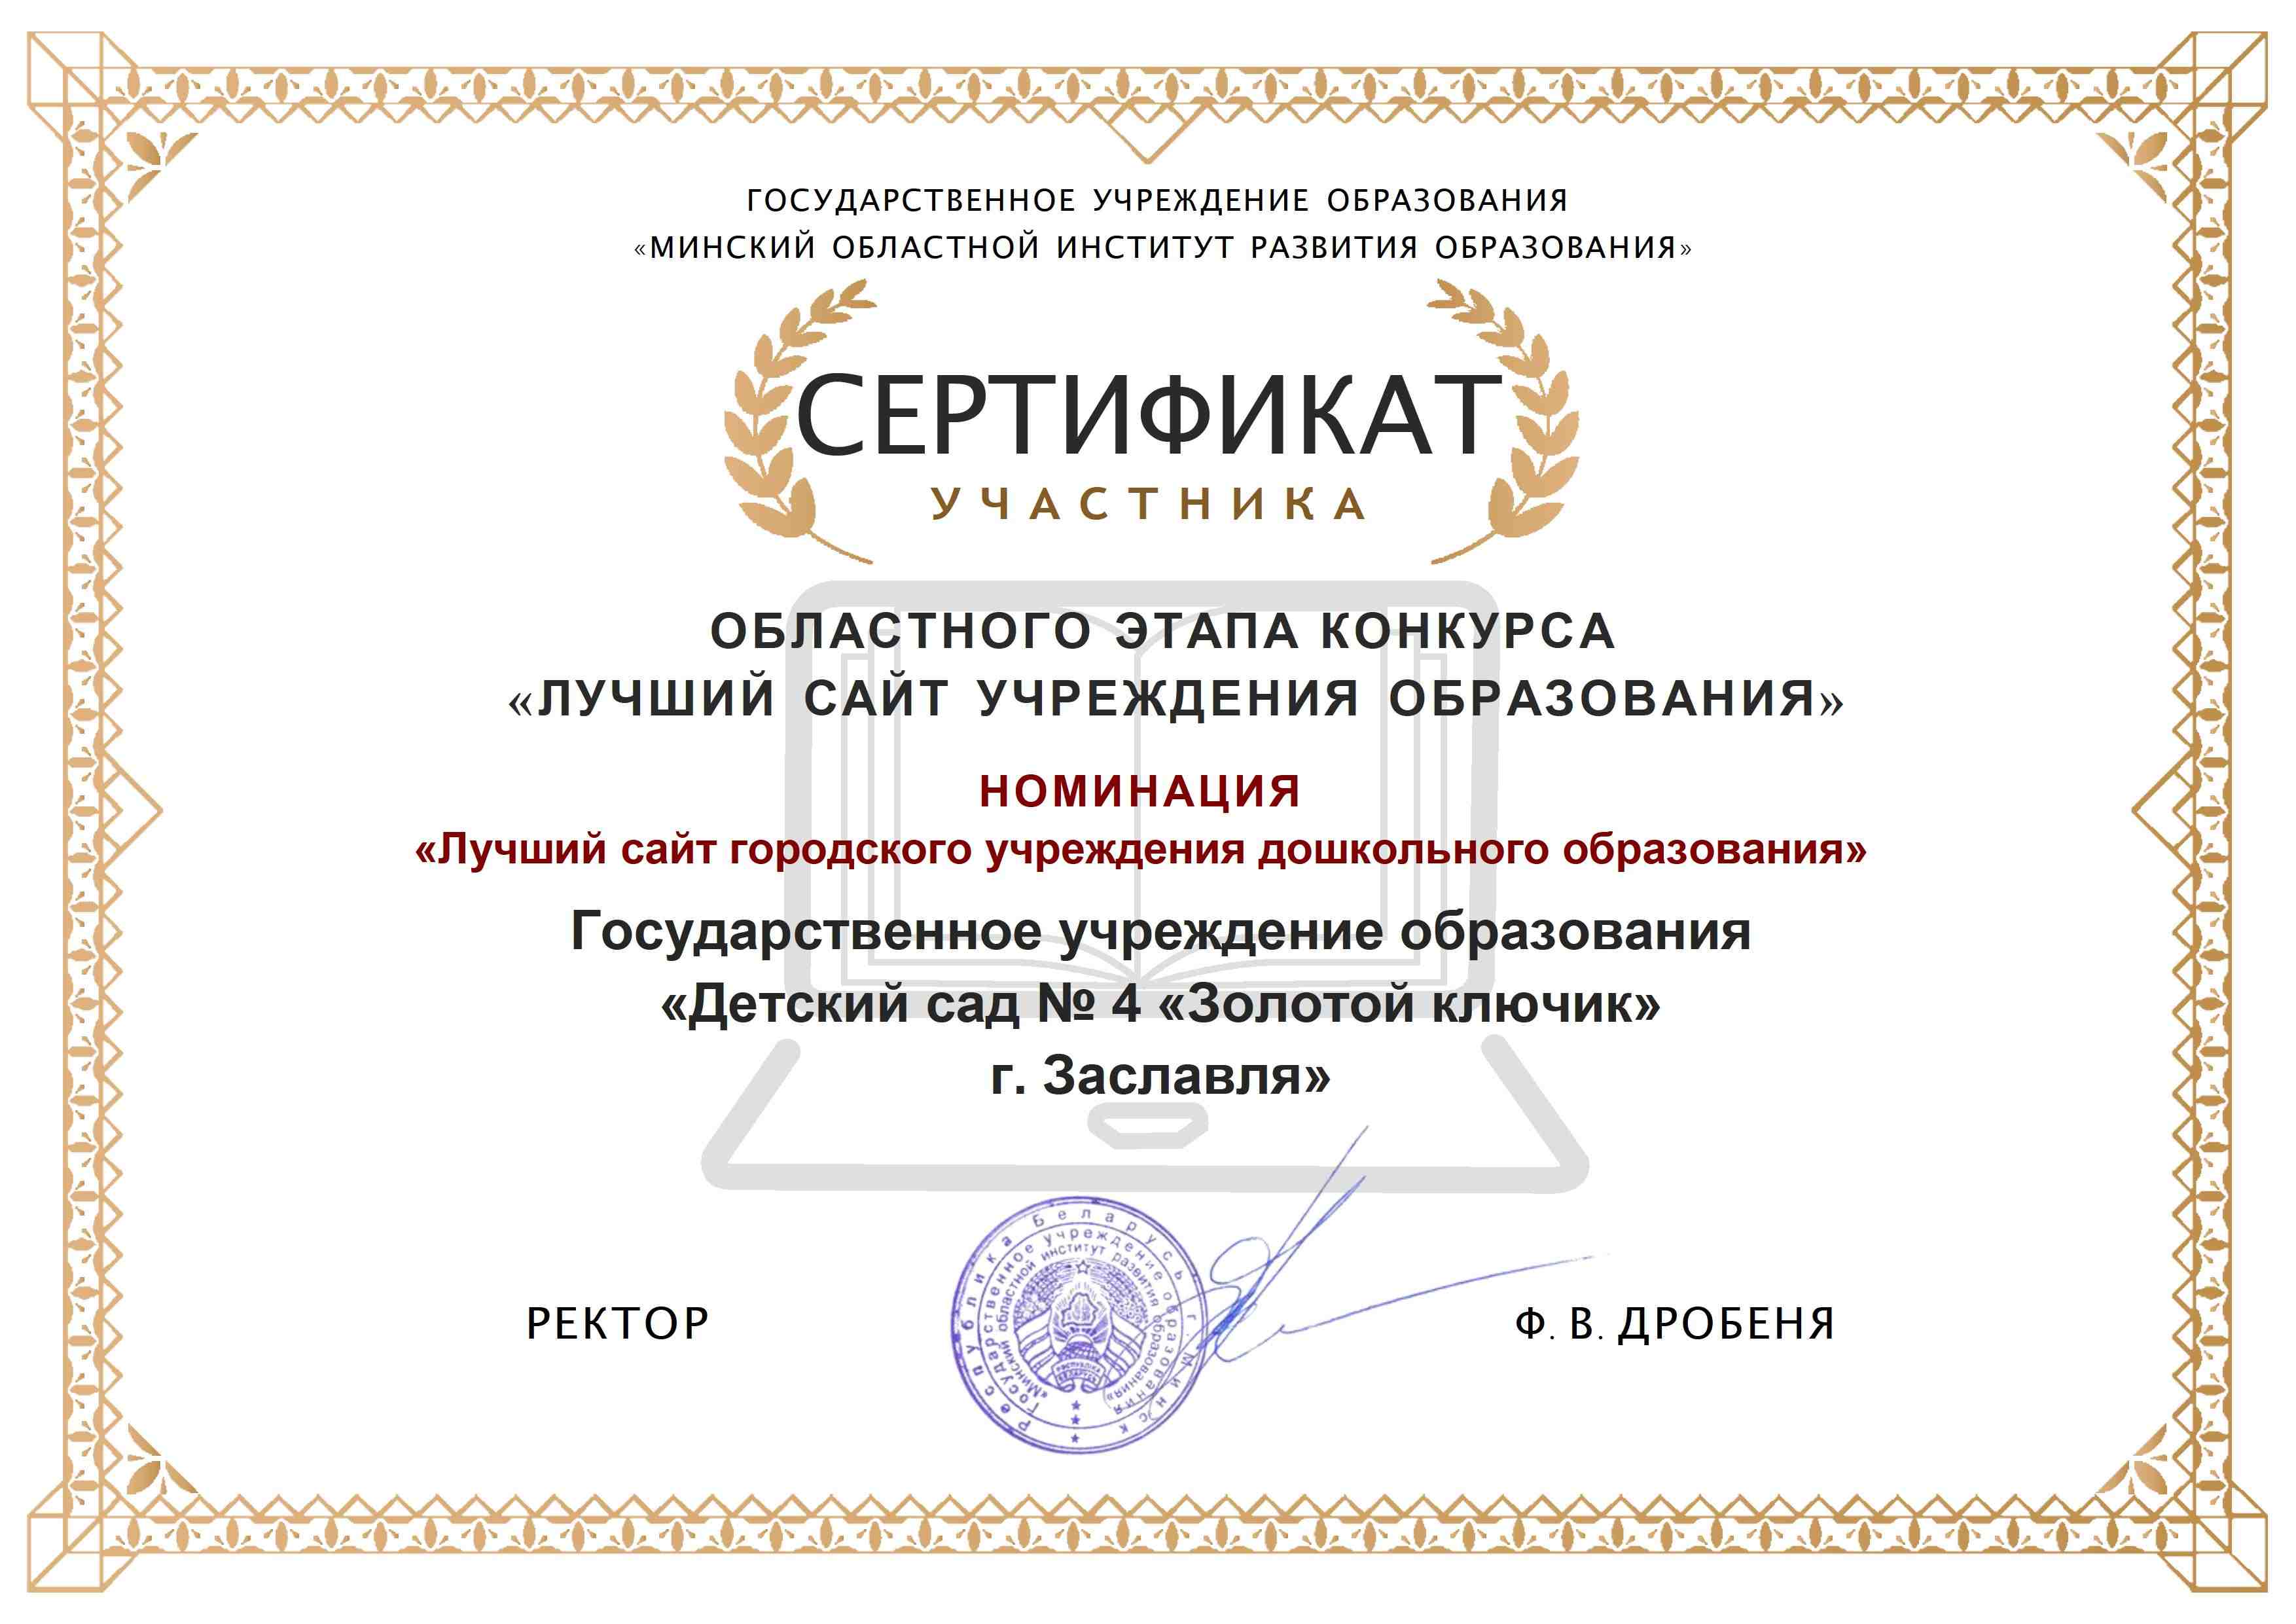 Рисунок. Сертификат